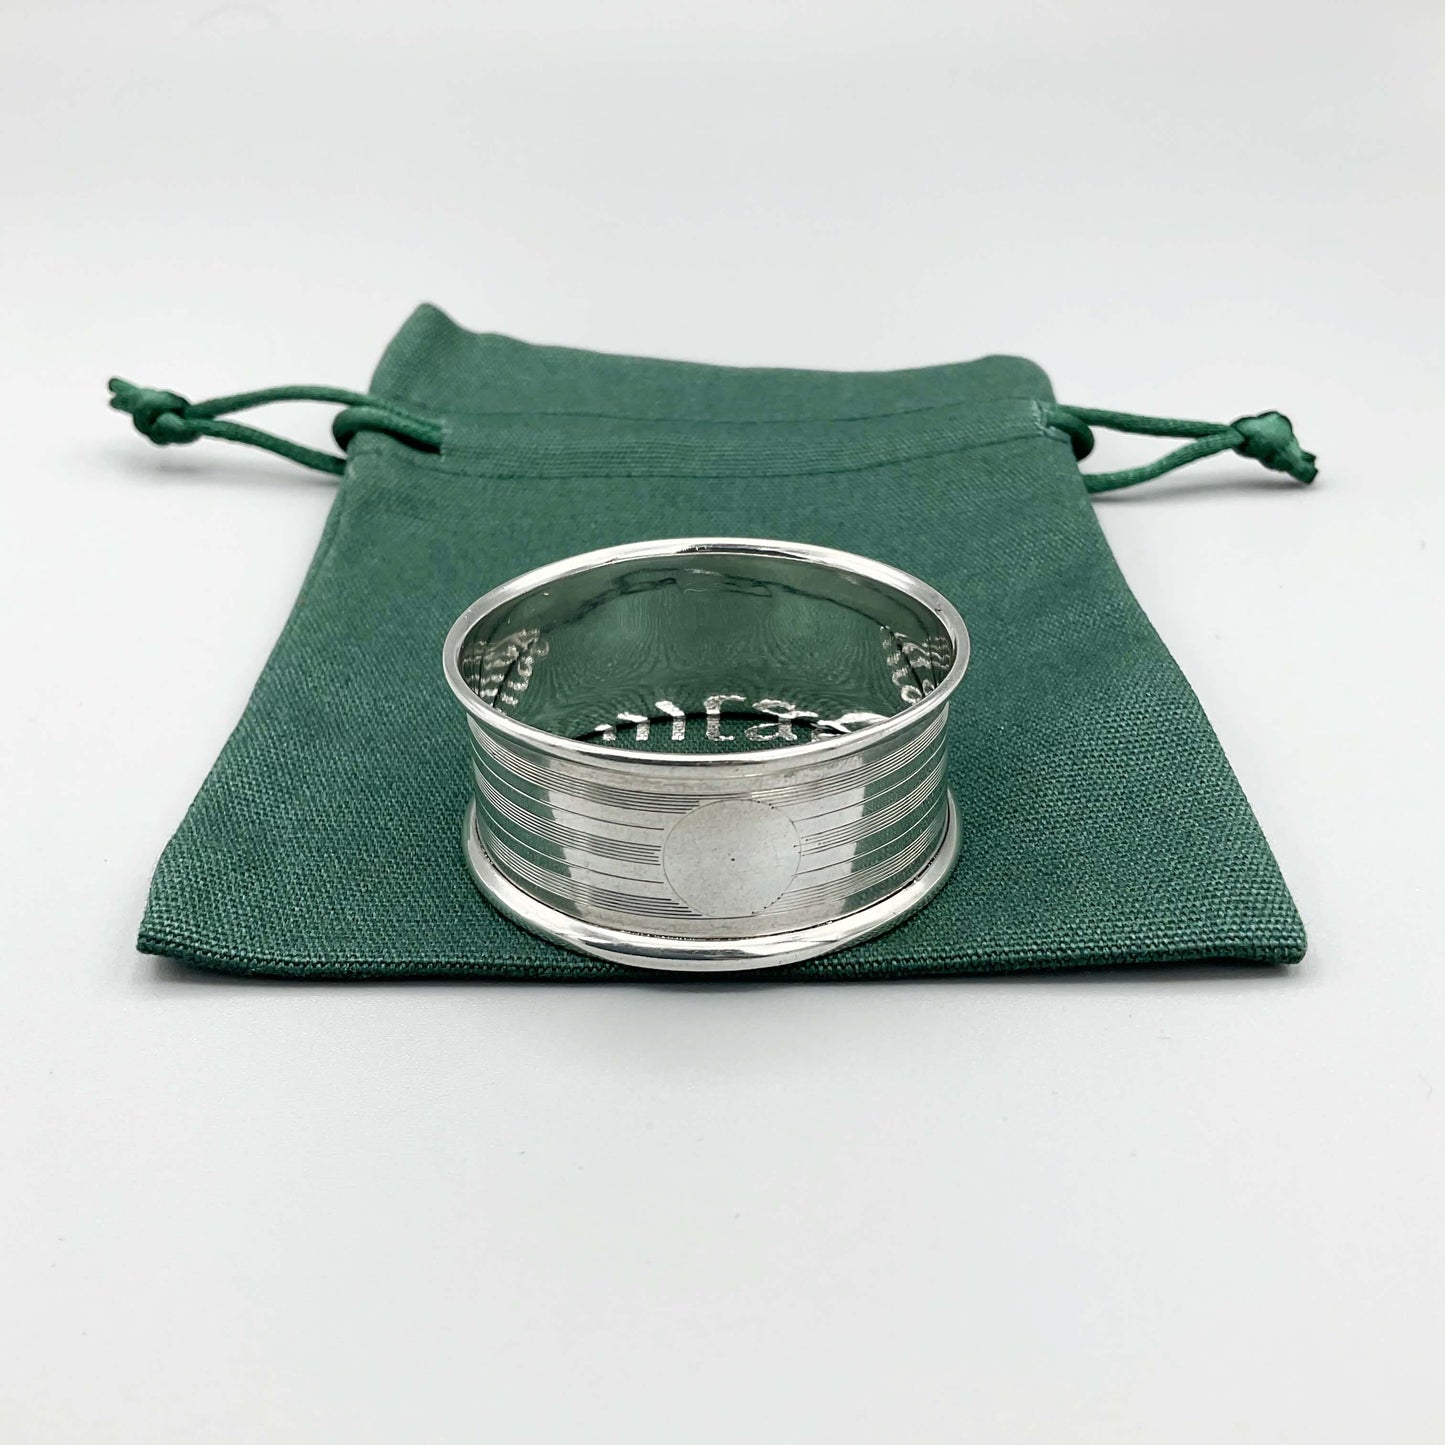 Silver napkin ring with a circular cartouche on a green cotton bag